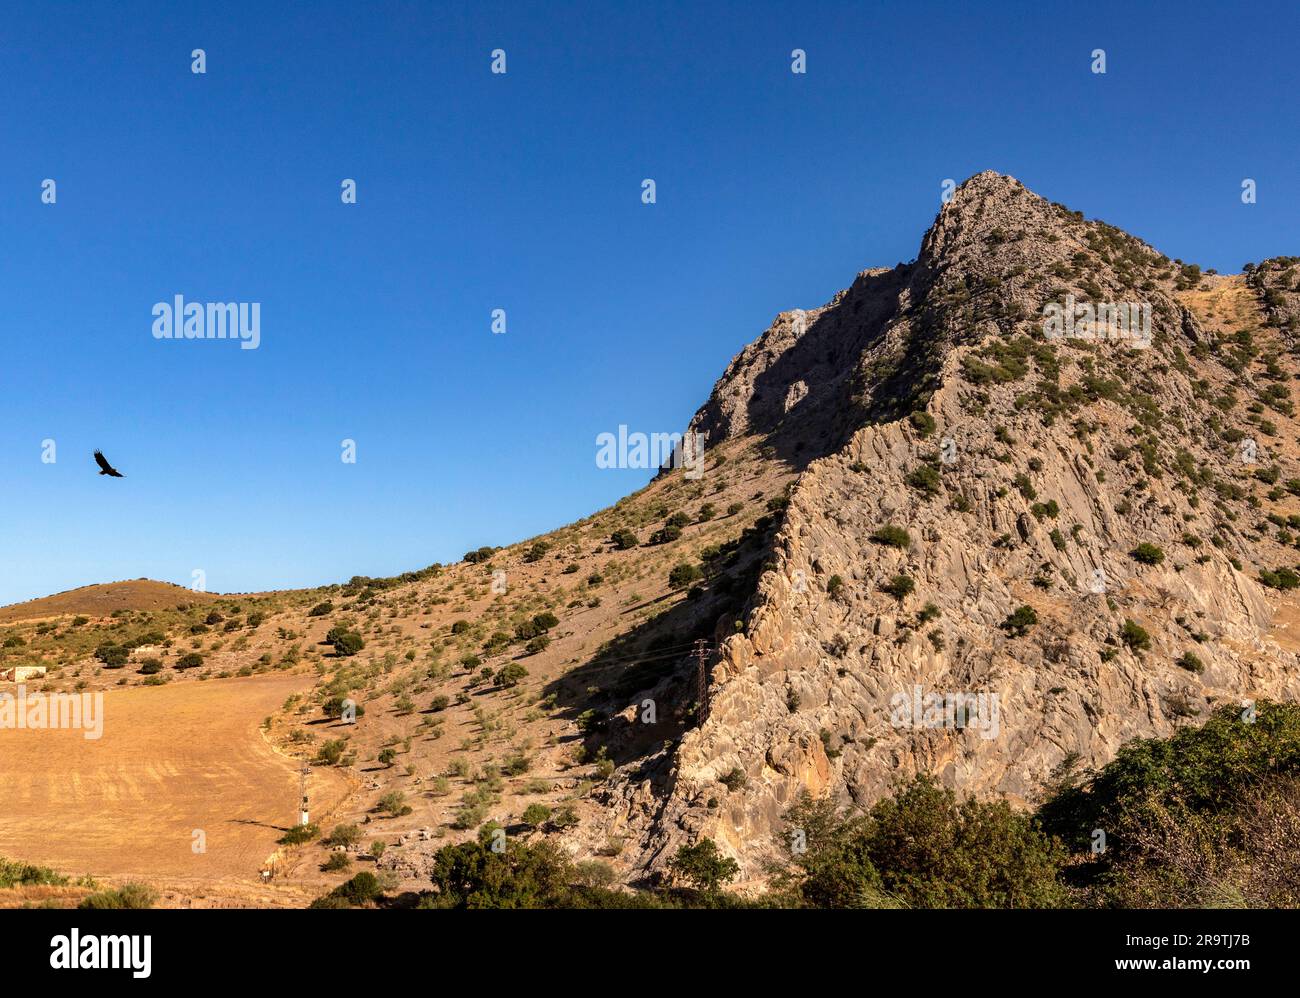 Der Adler fliegt in Richtung des 880 Meter hohen Berges Pena de los Enamorados (The Lovers Rock ), Provinz Malaga, Andalusien, Spanien Stockfoto